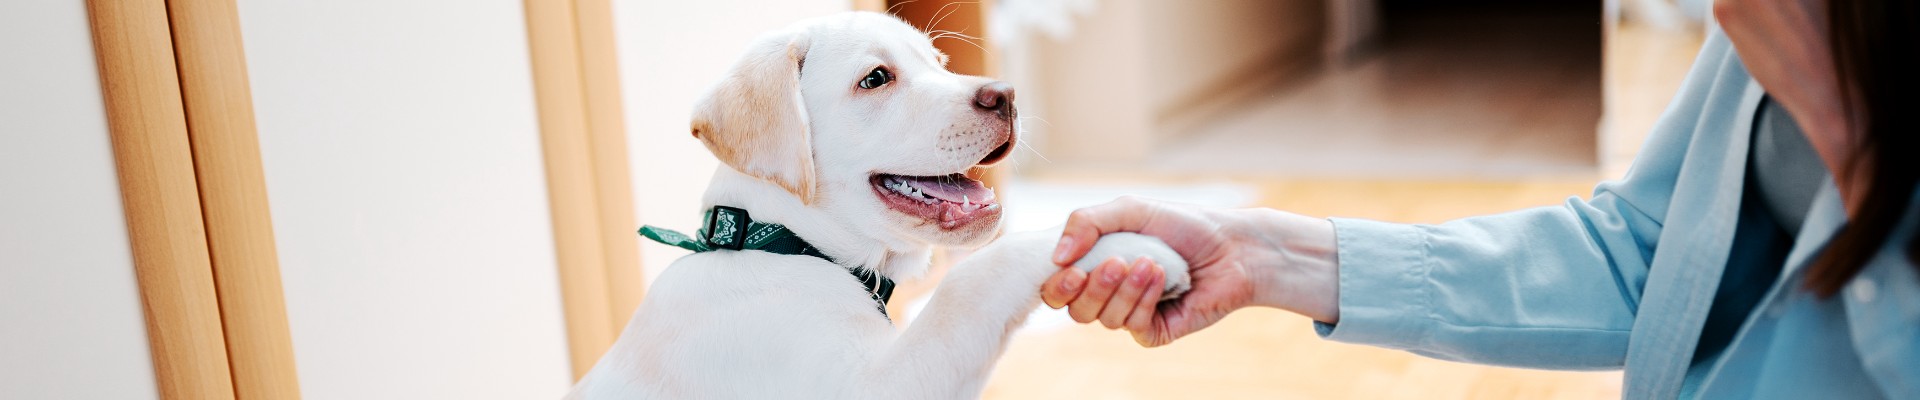 perro blanco sonriente dando la mano